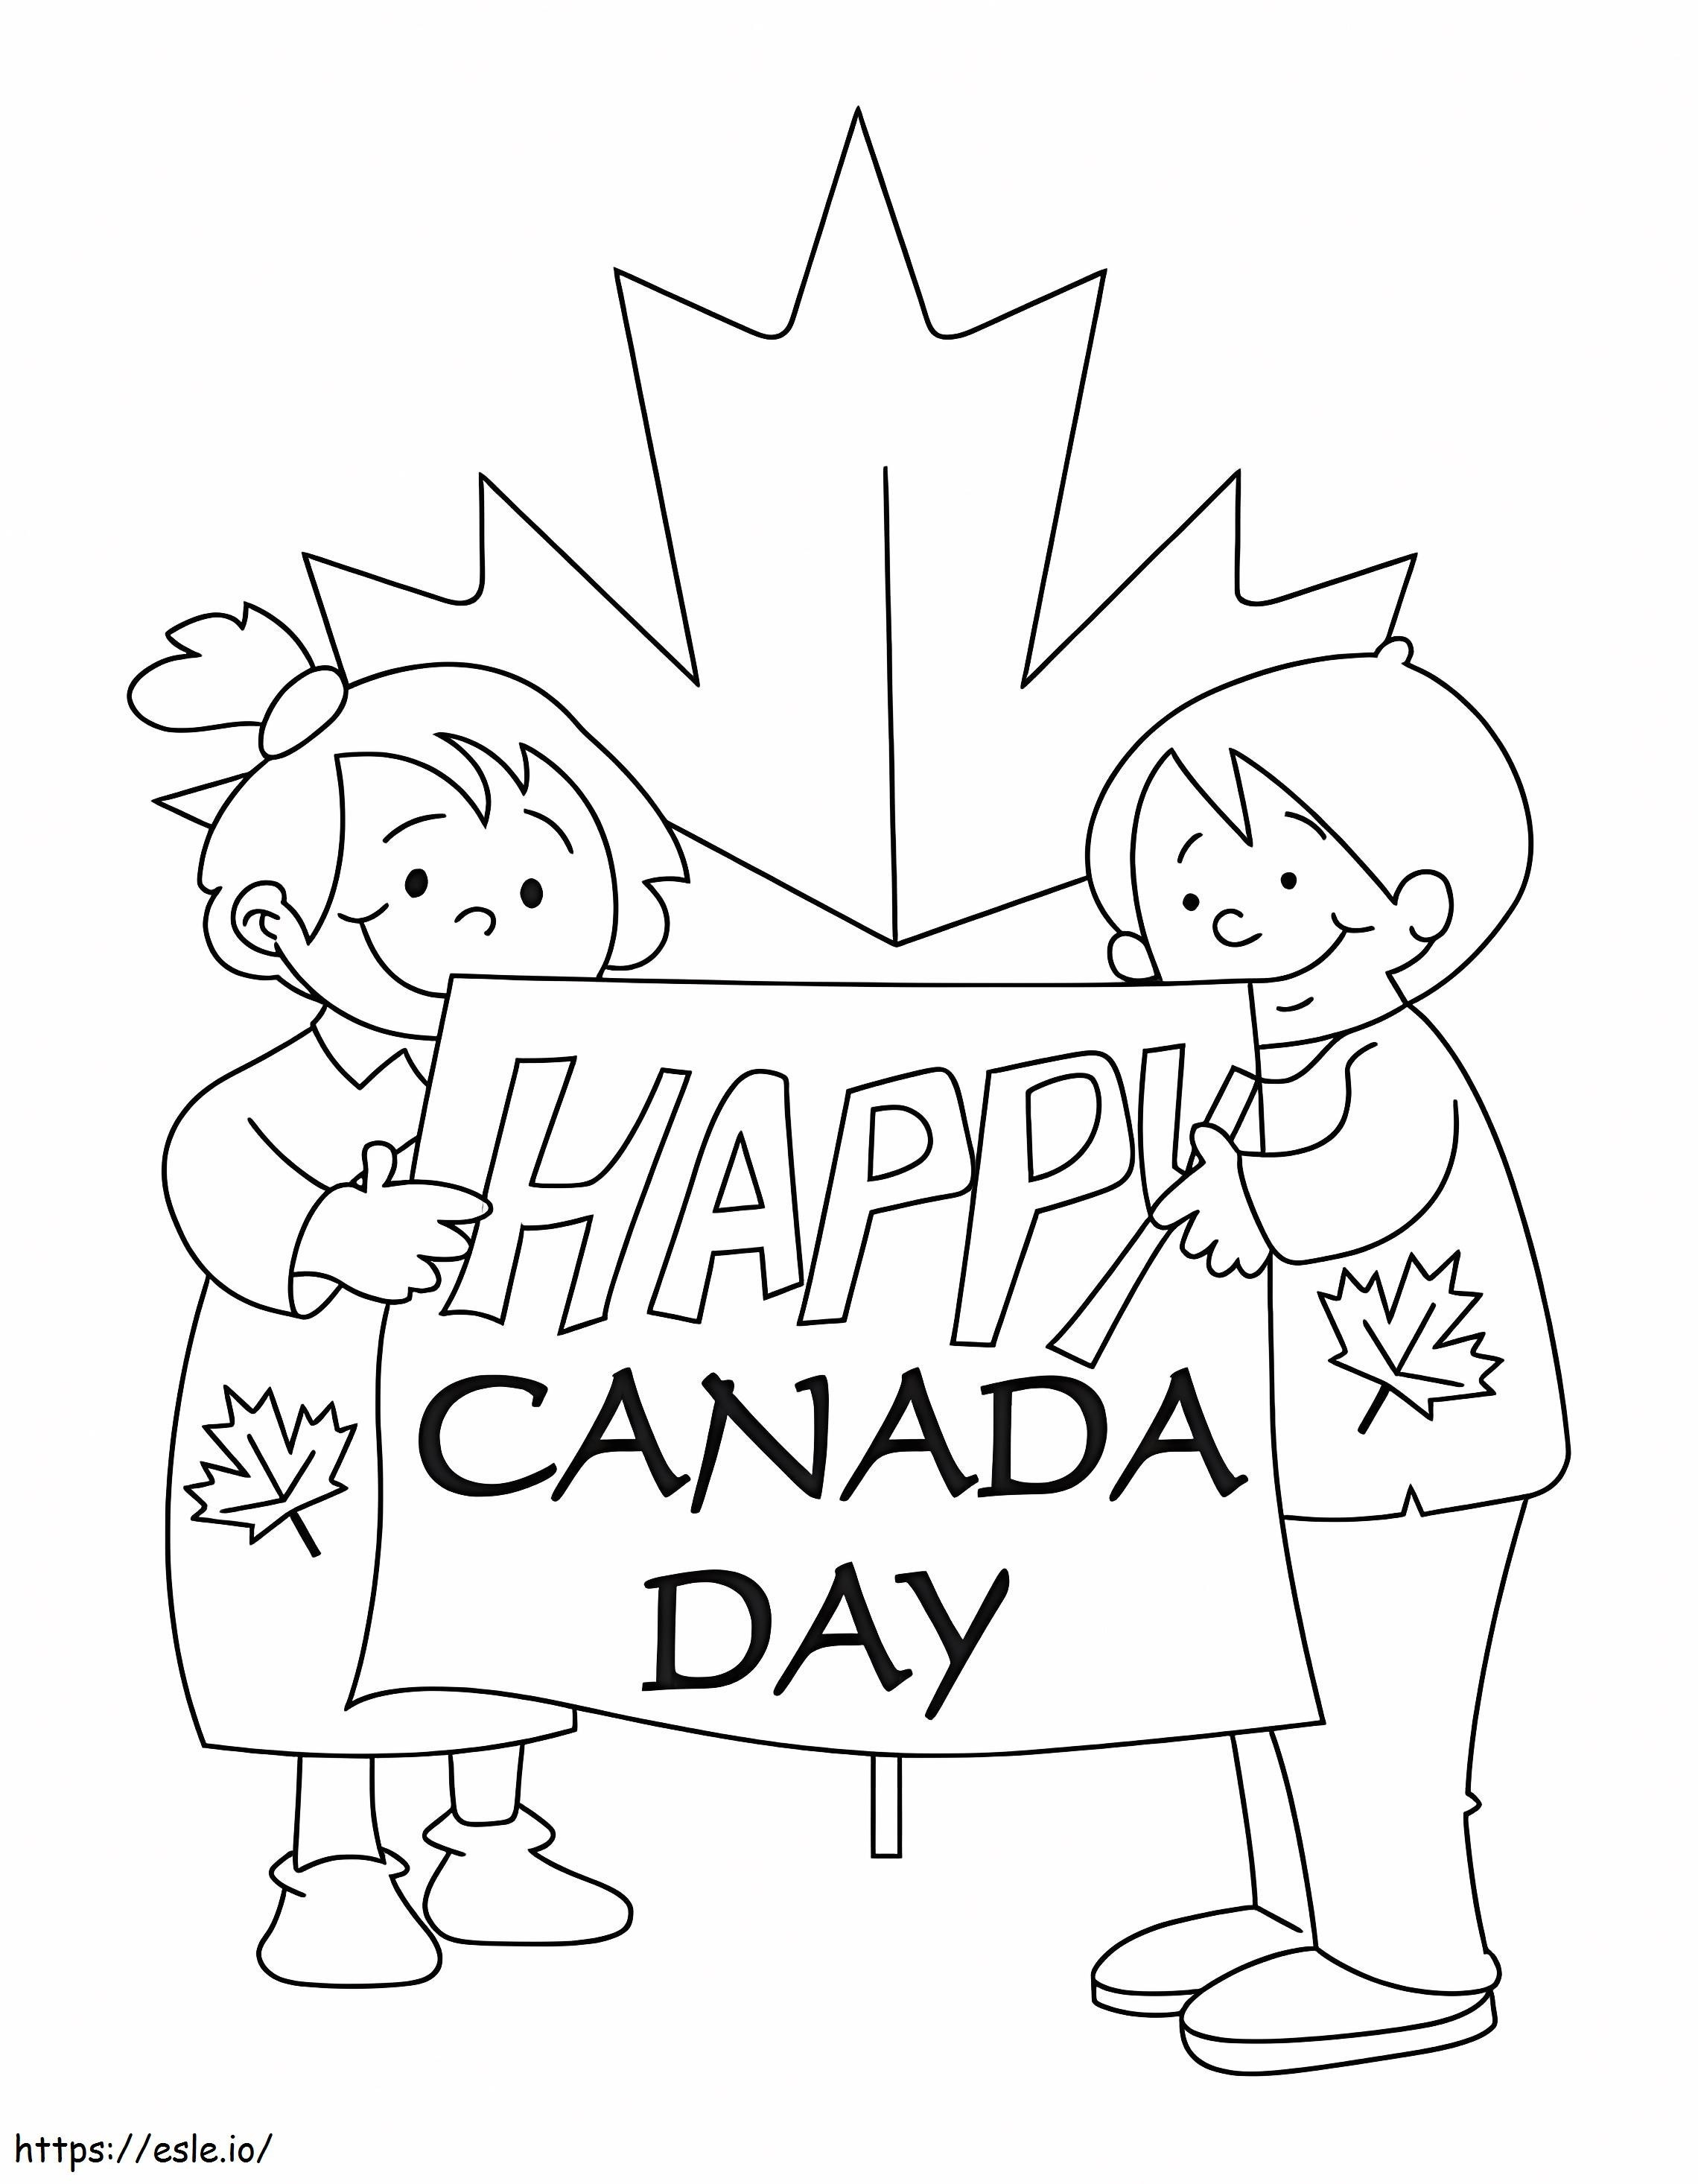 Szczęśliwego Dnia Kanady 8 kolorowanka